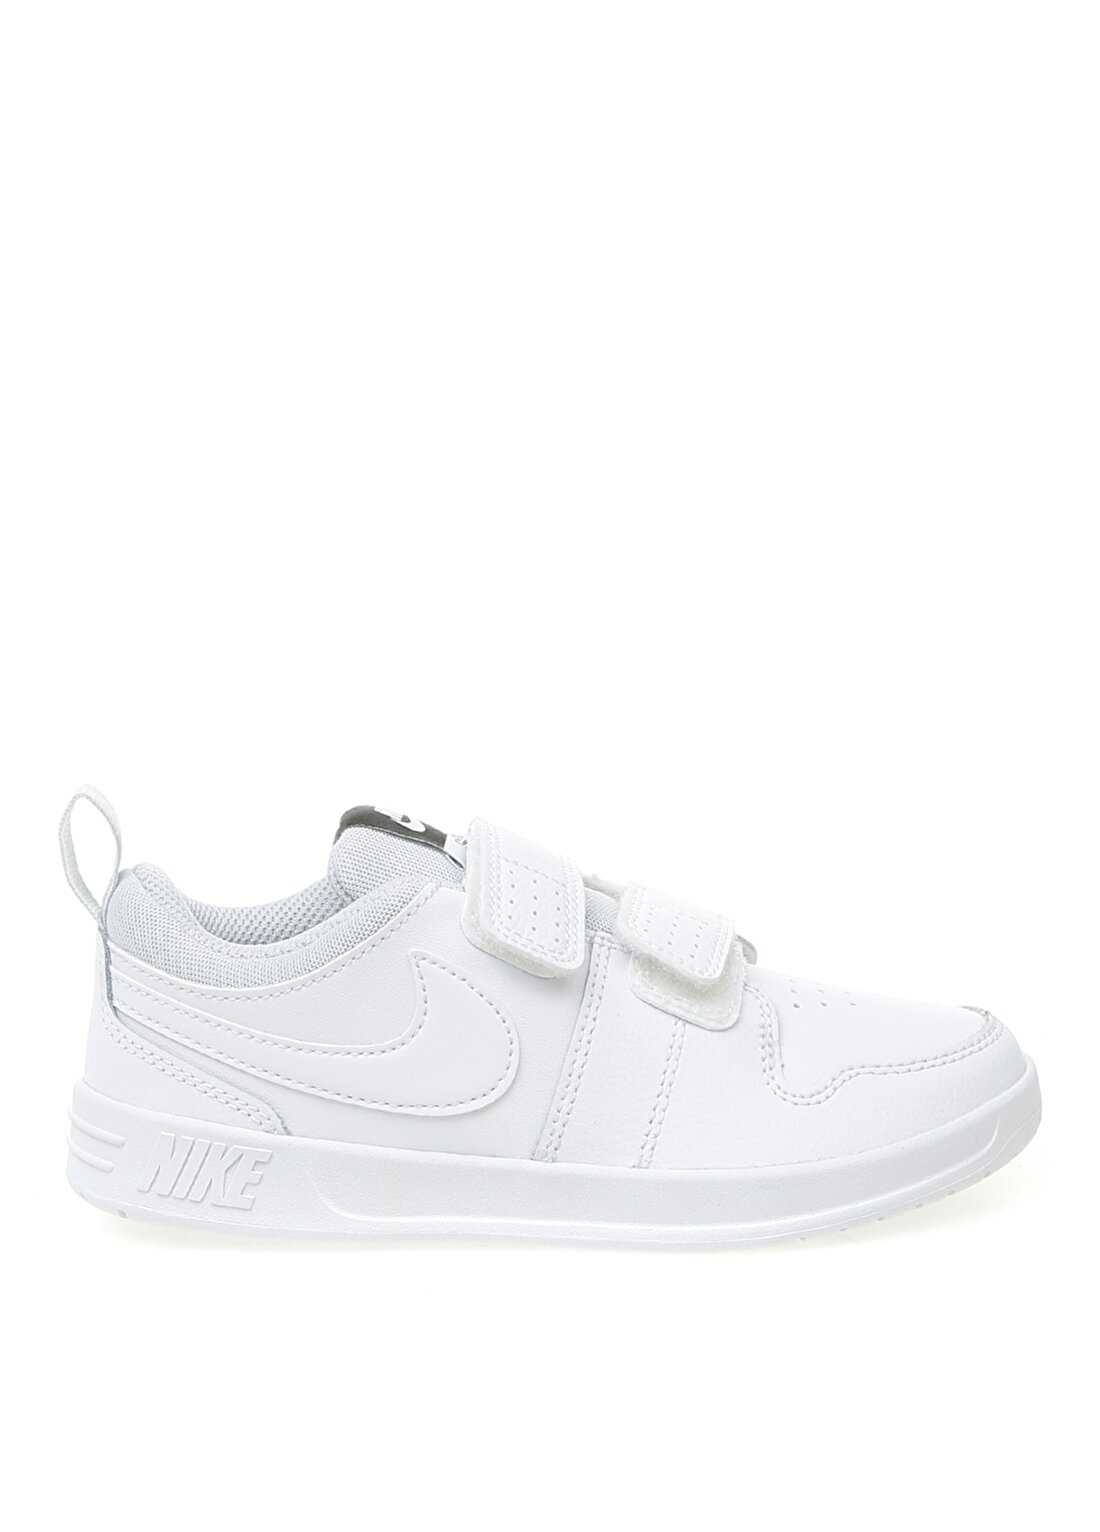 Nike Ar4161-100 Pıco 5 (Psv) Çocuk Beyaz Yürüyüş Ayakkabısı